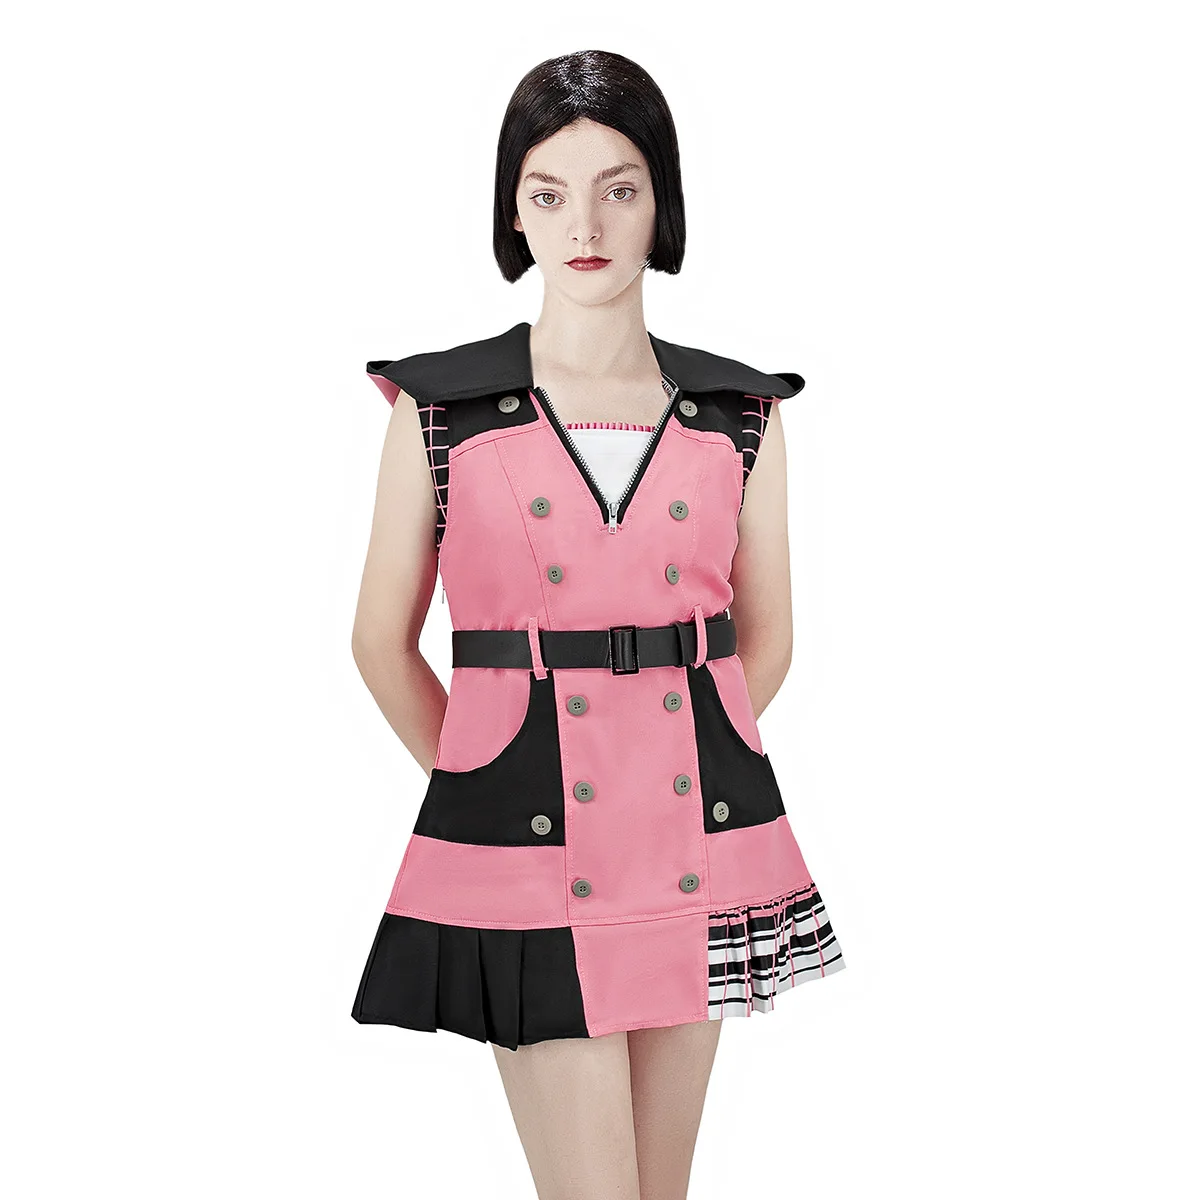 

Костюм для косплея Kingdom Hearts III Kairi, костюм для женщин на Хэллоуин, карнавал, костюм для косплея, костюм для взрослых